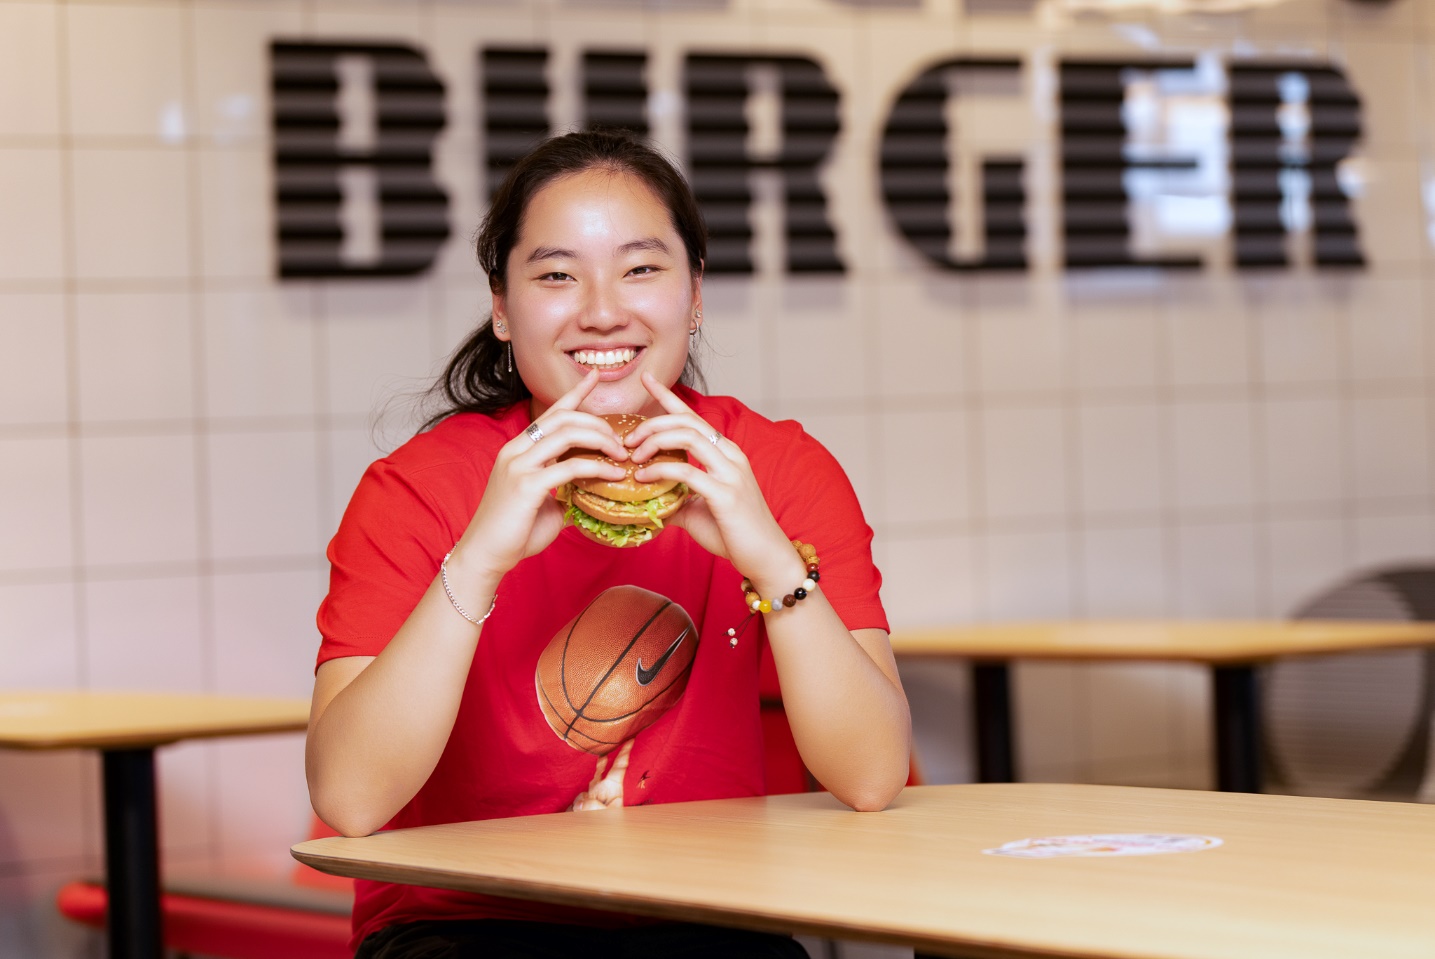 McDonald’s chuẩn bị khai trương cửa hàng đầu tiên tại Đà Nẵng, tung nhiều khuyến mãi chiều lòng thực khách - Ảnh 3.